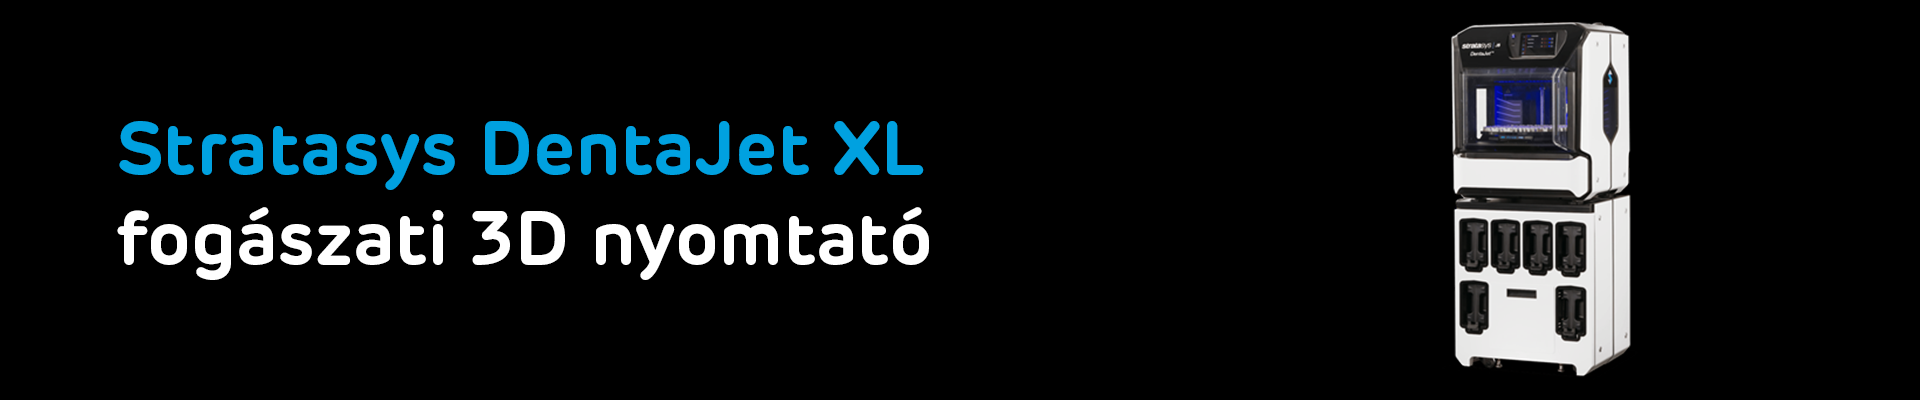 Stratasys DentaJet XL 3D nyomtató